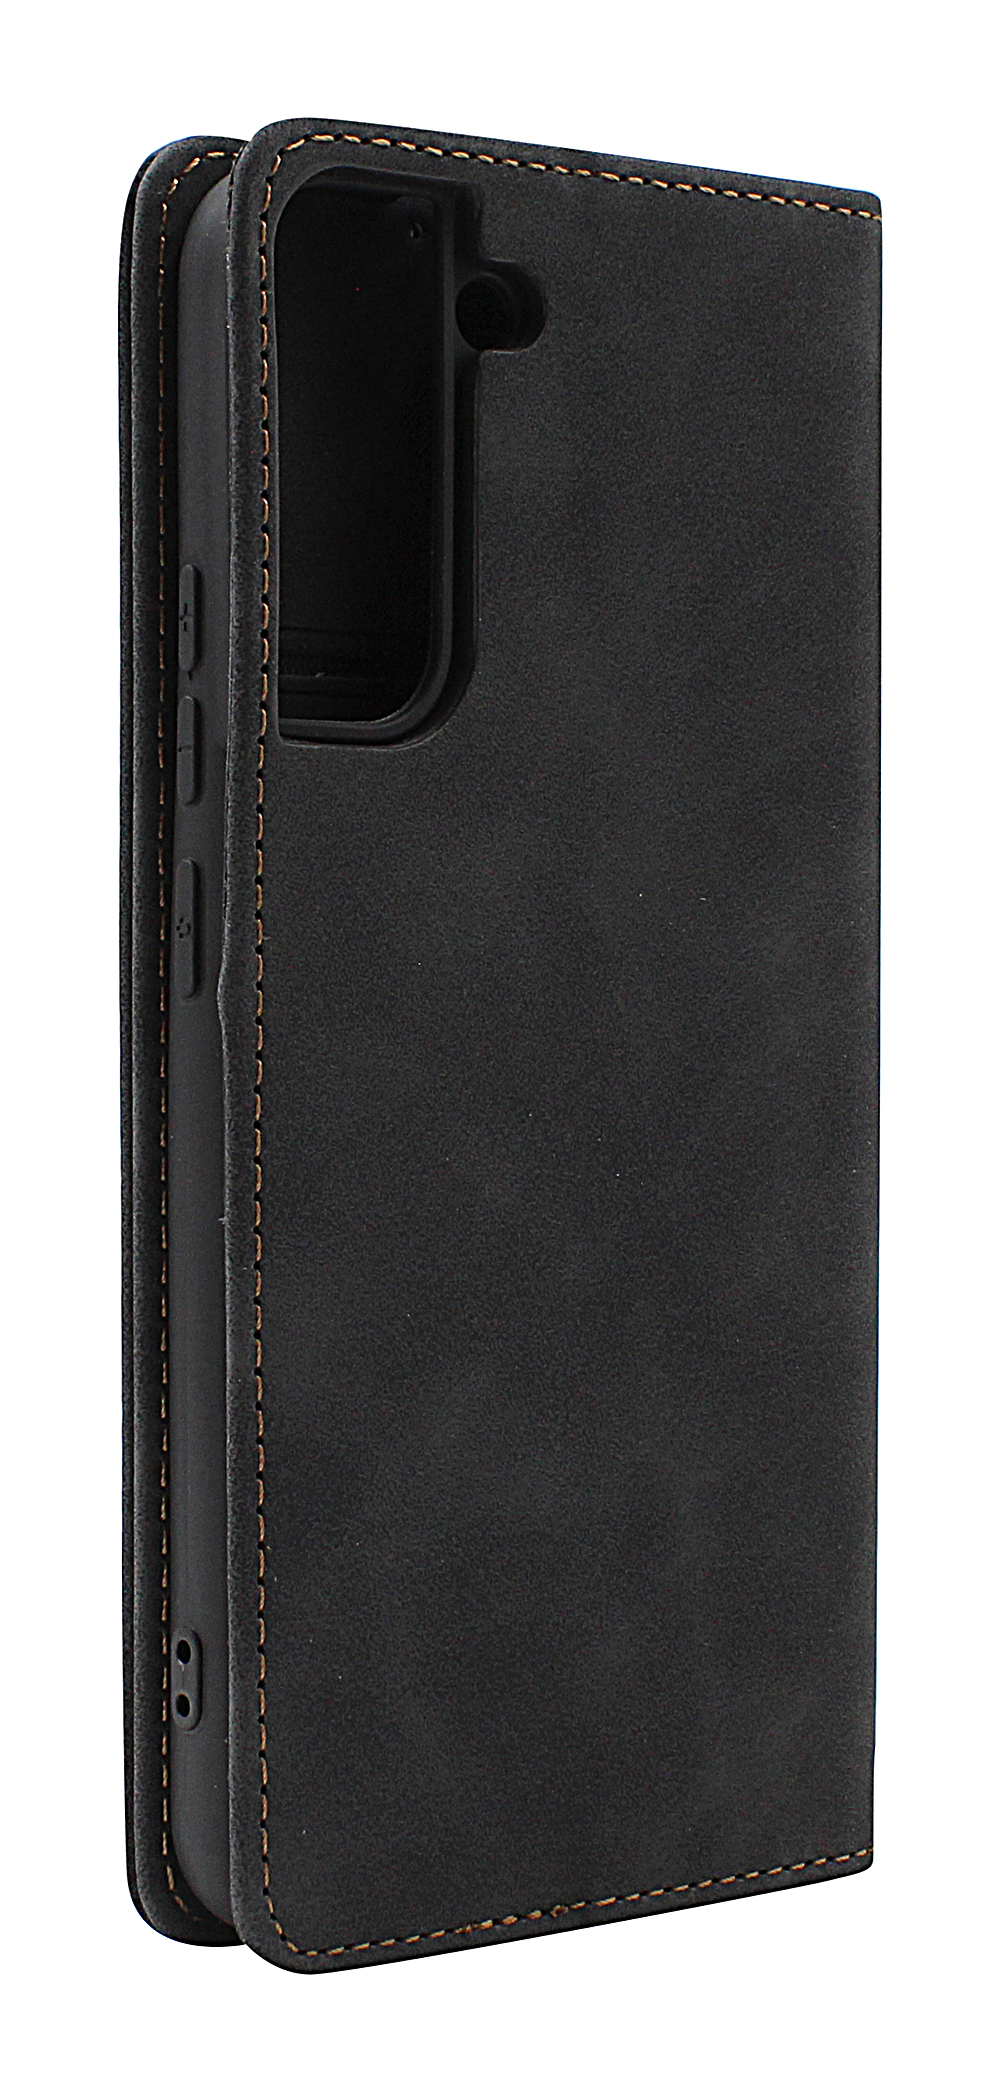 billigamobilskydd.seFancy Standcase Wallet Samsung Galaxy S22 Plus 5G